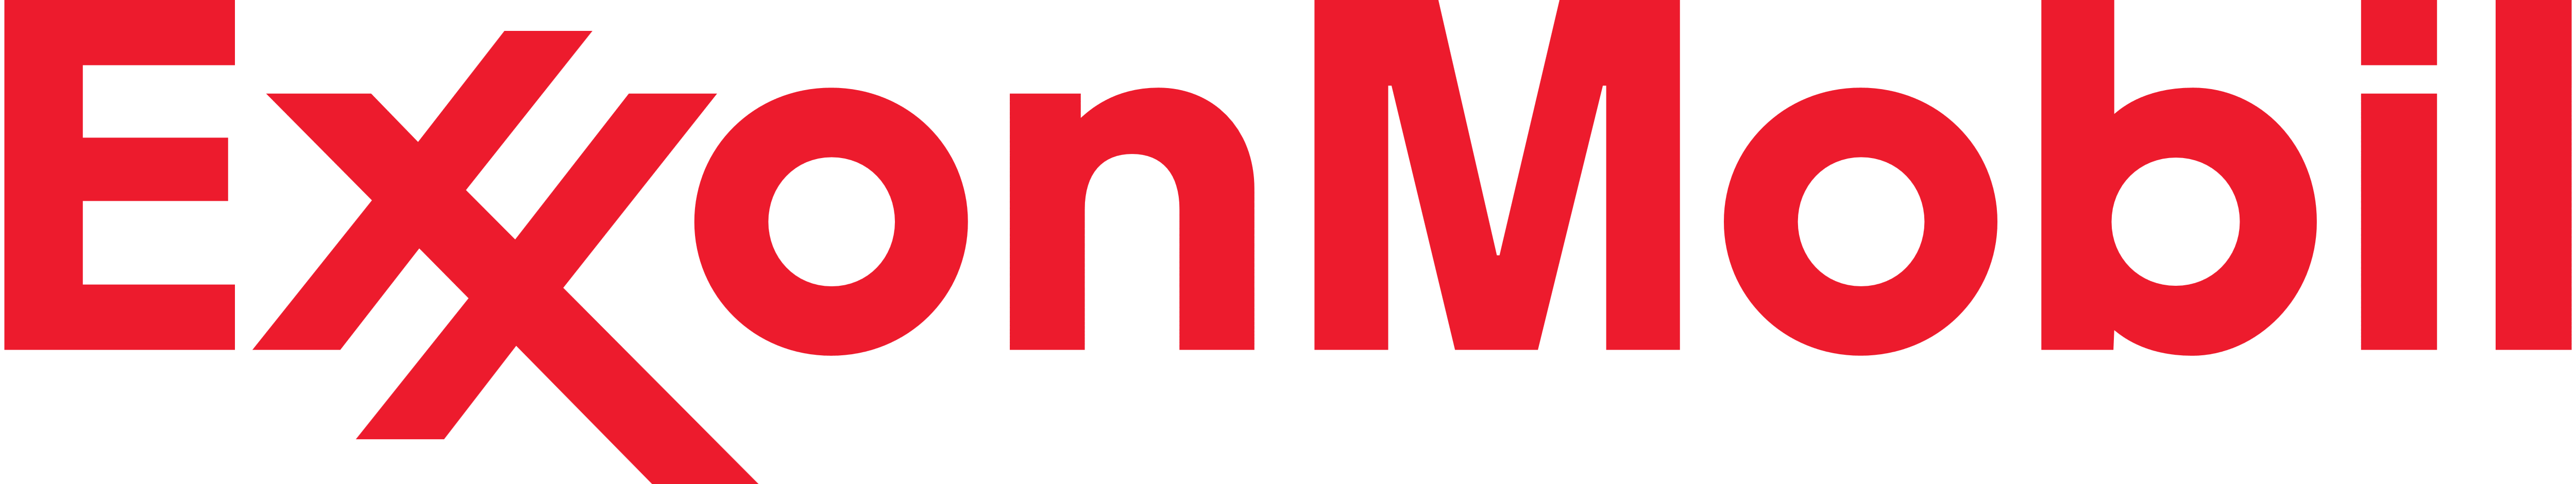 Exxon_Mobil_logo